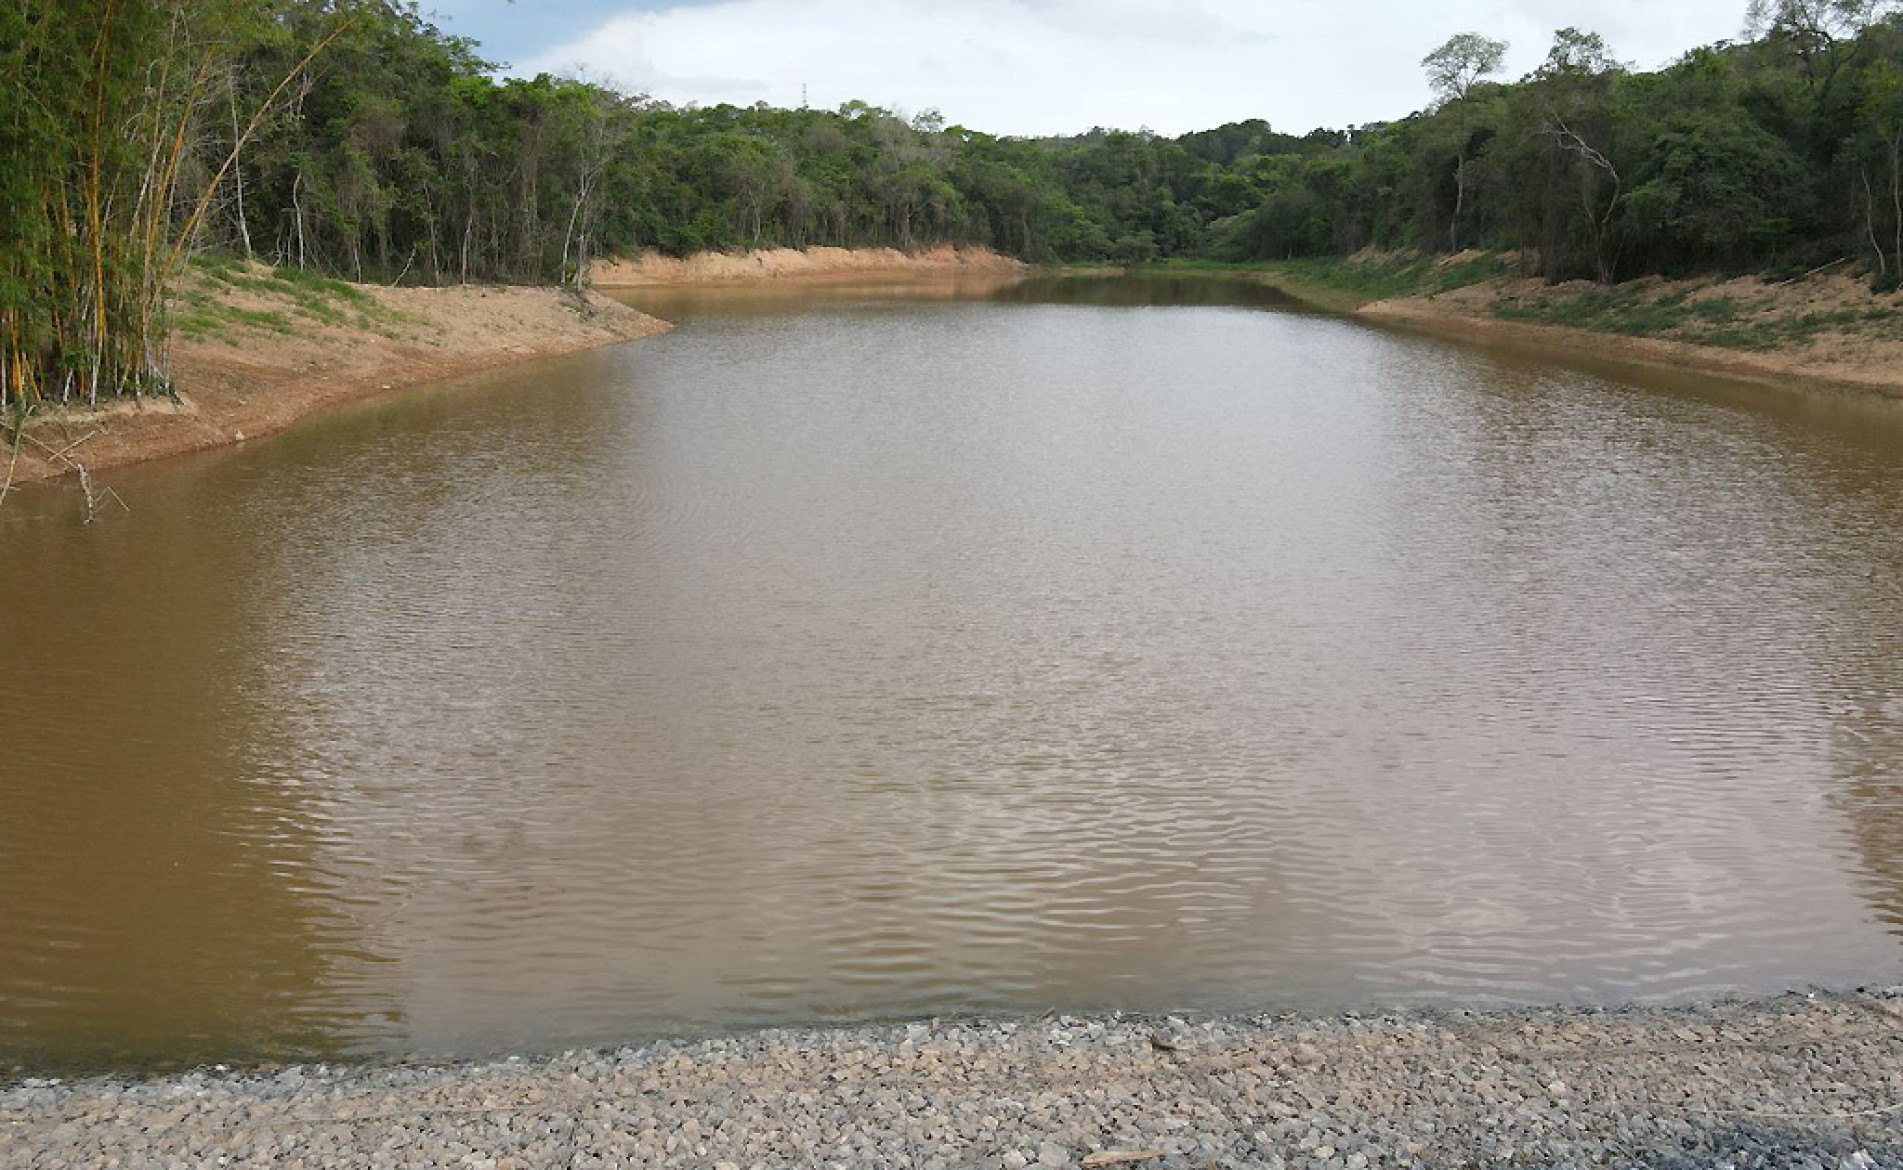 Uma das principais fontes de abastecimento da cidade vizinha, a captação de água bruta do Braiaiá começou em 1921